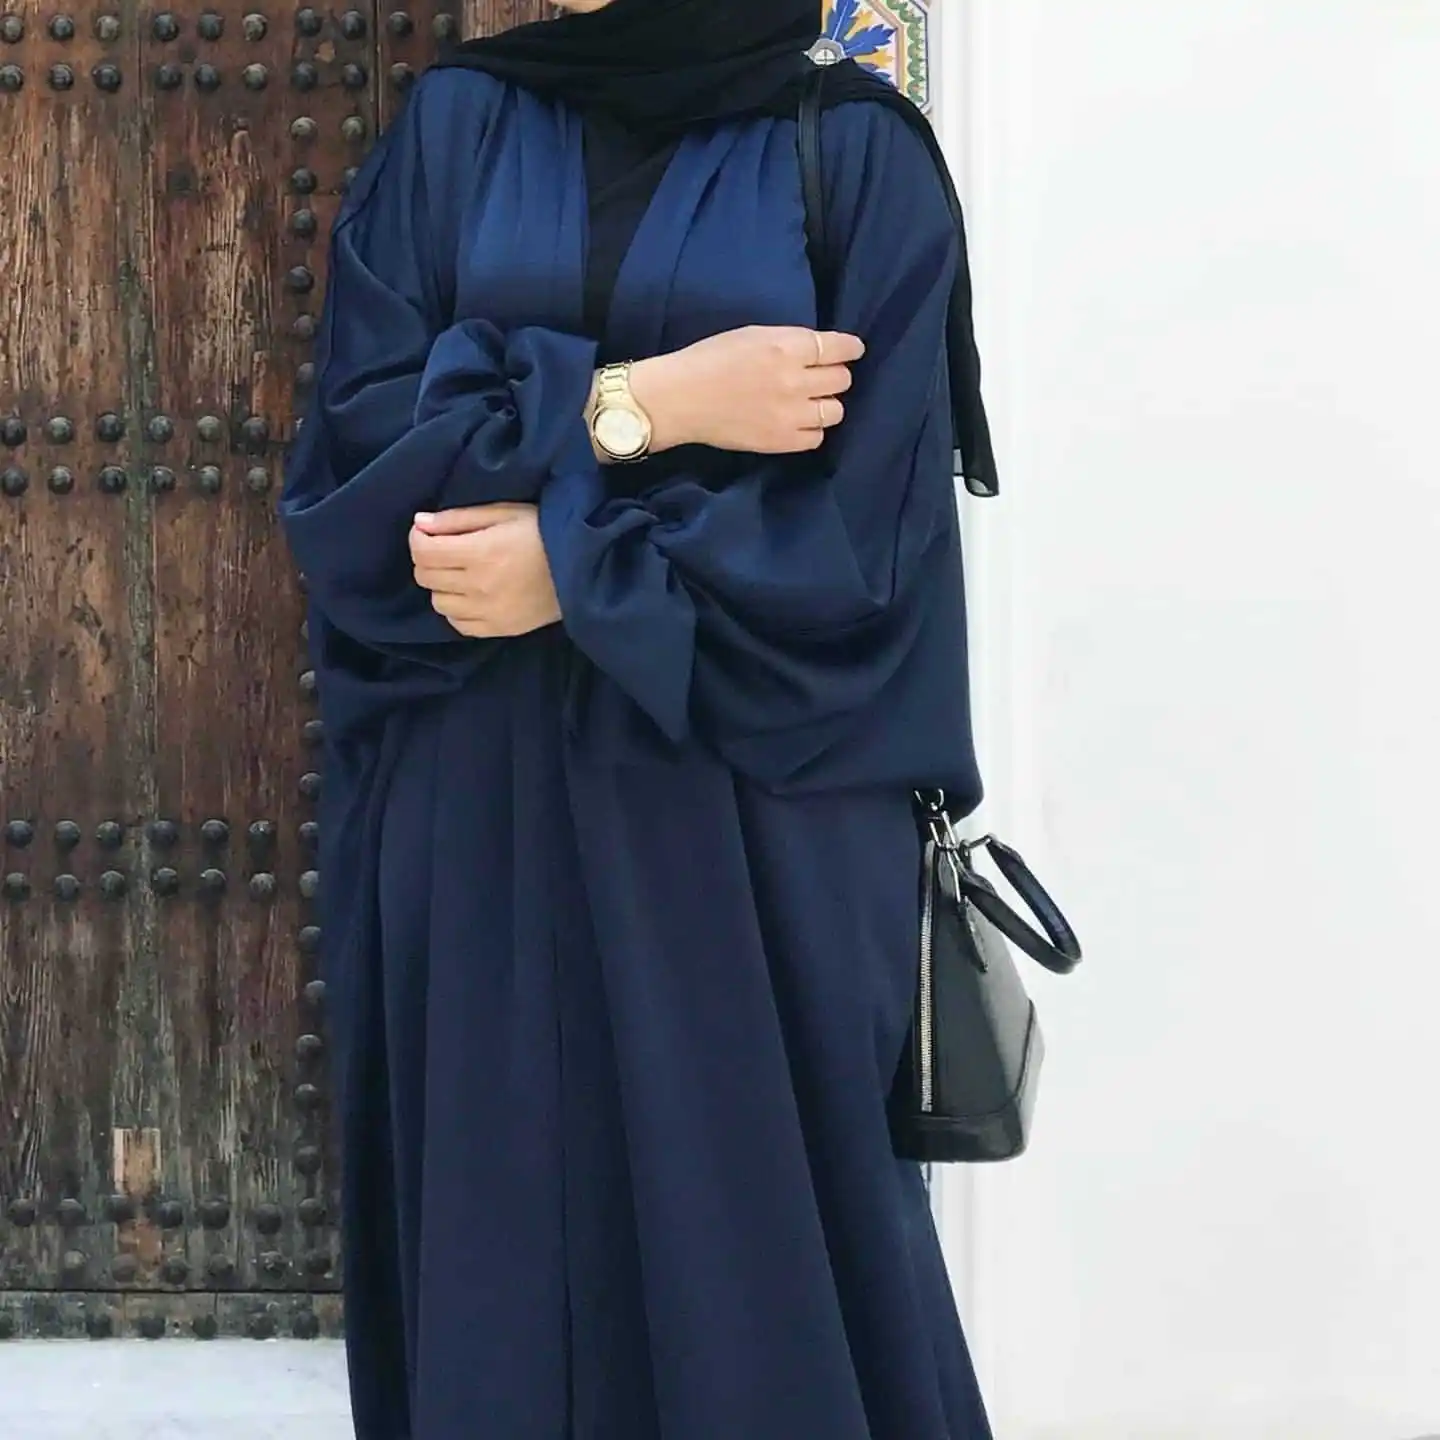 ชุดเดรสยาวแบบชาวคาฟตันของอาบายะอิสลามเสื้อผ้าพื้นเมืองผ้าซาตินชุดฮิญาบแบบเปิดสำหรับผู้หญิงมุสลิม